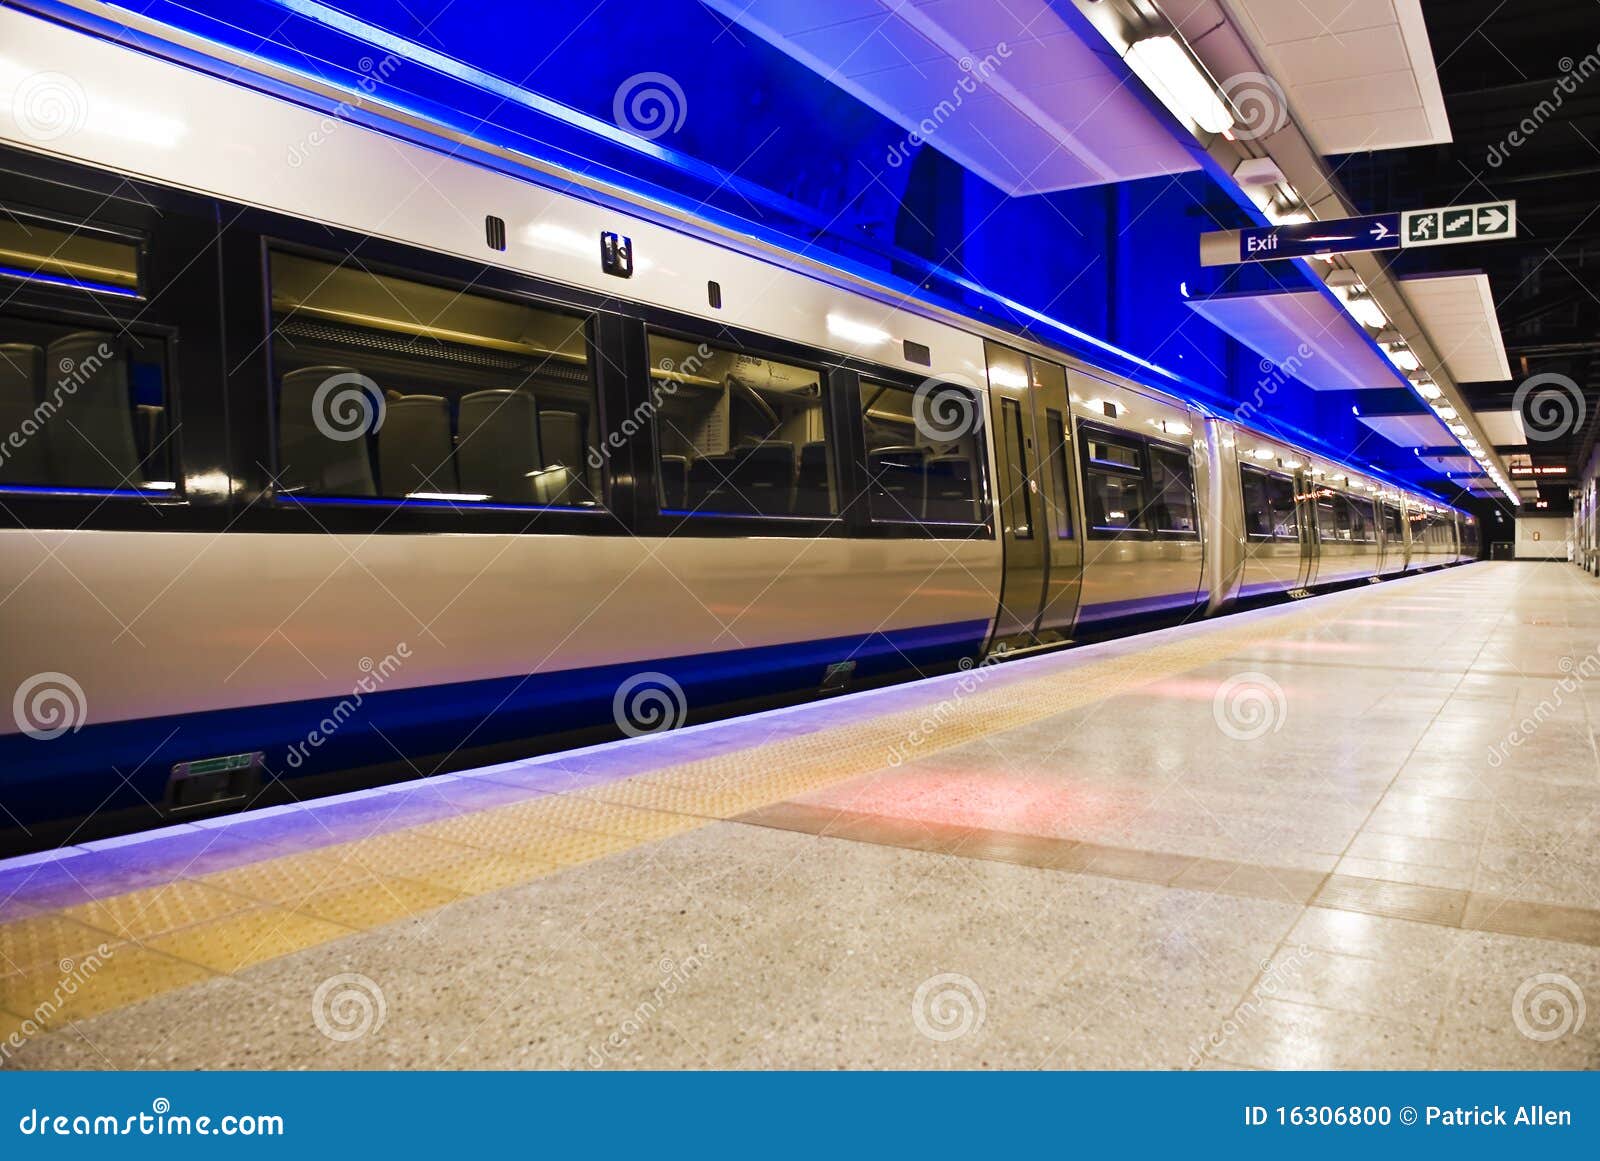 gautrain - high speed commuter train